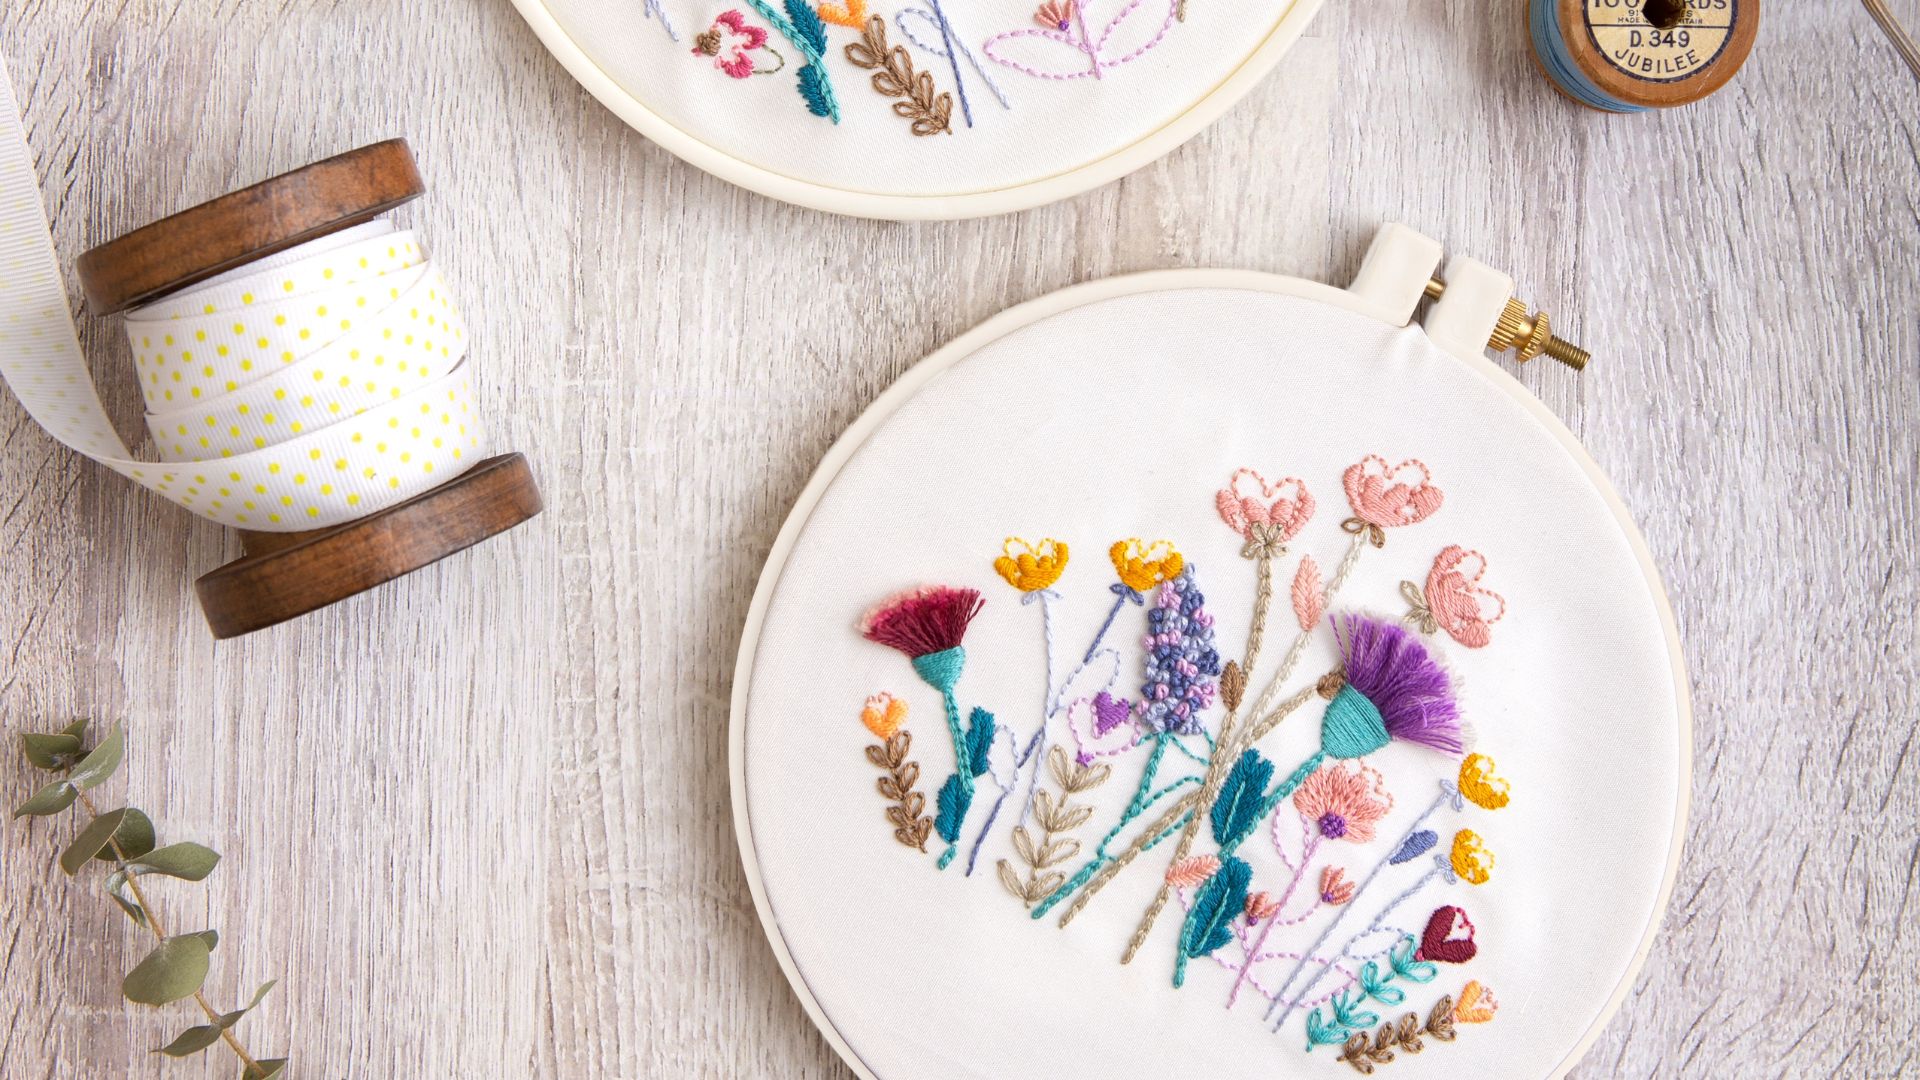 Hand embroidered floral hoop artwork